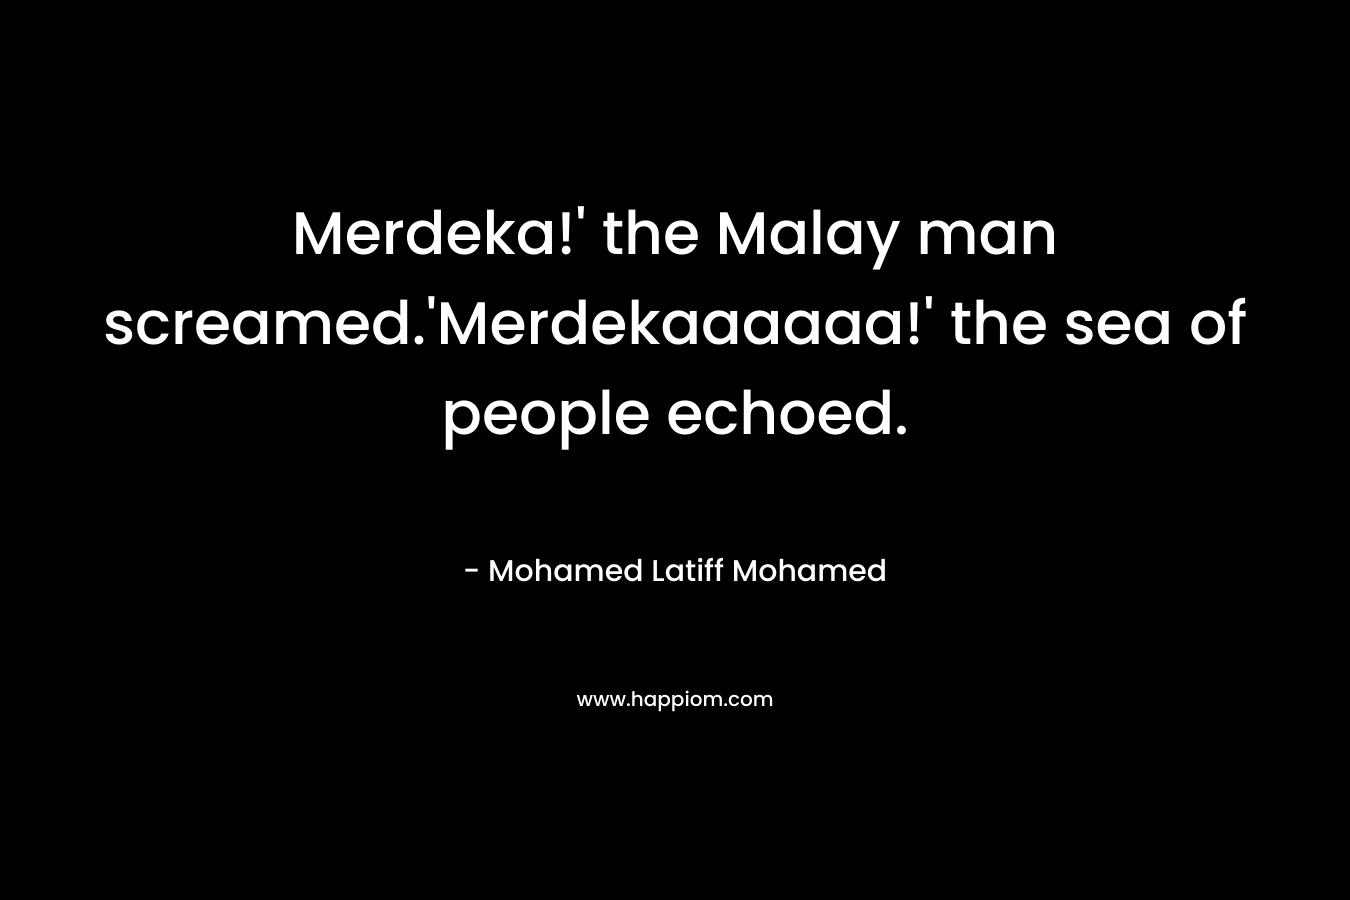 Merdeka!' the Malay man screamed.'Merdekaaaaaa!' the sea of people echoed.